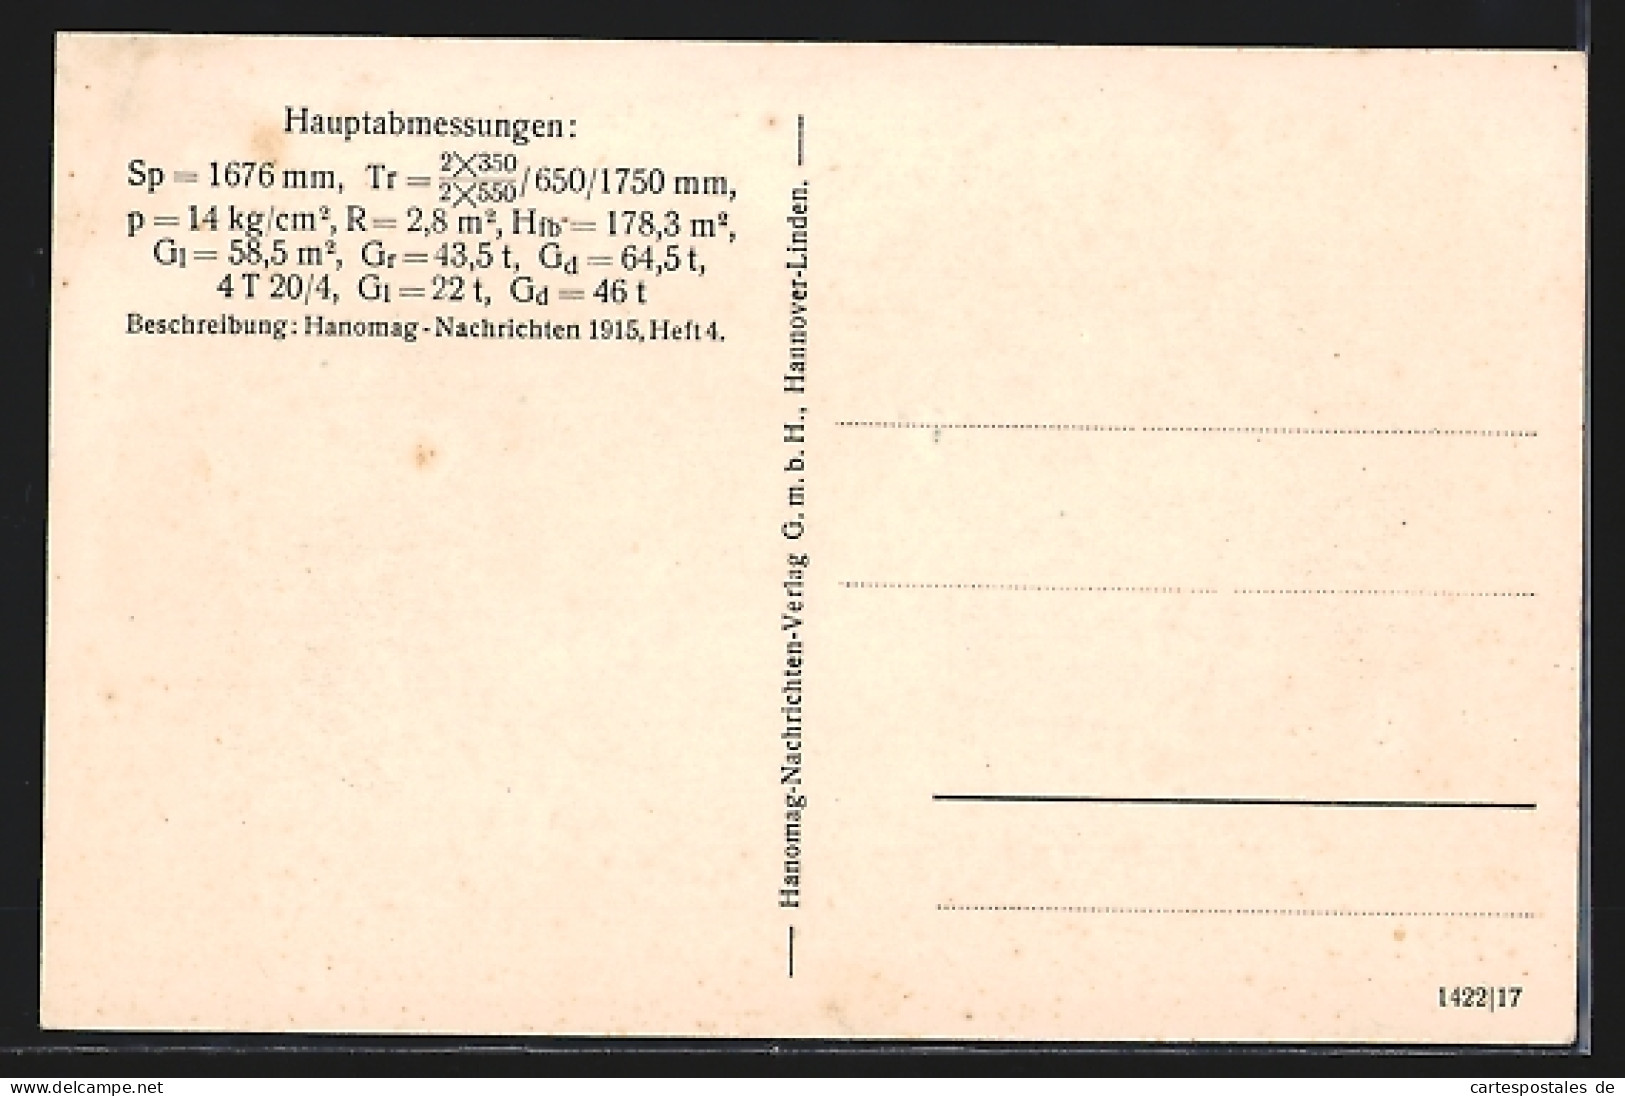 AK Hannover-Linden, Hanomag, 2 C-Vierzylinder-Verbund-Nassdampf-Schnellzuglokomotive  - Trains